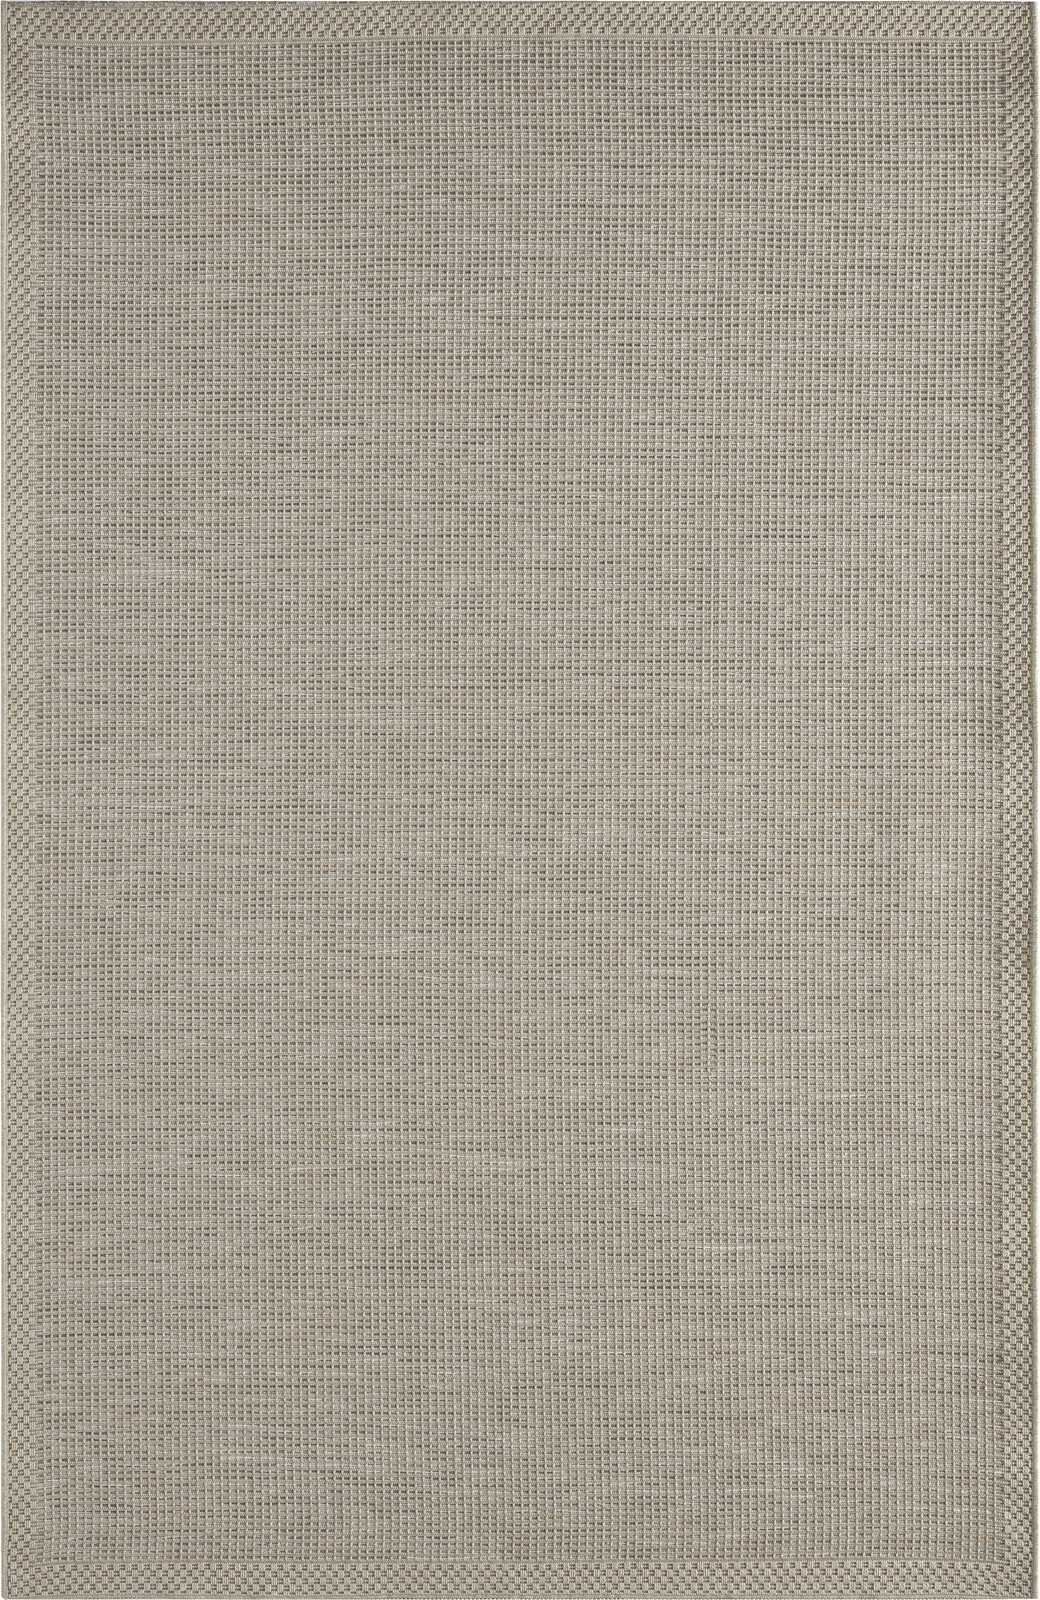             Flatweave Vloerkleed voor Buiten in Grijs - 200 x 140 cm
        